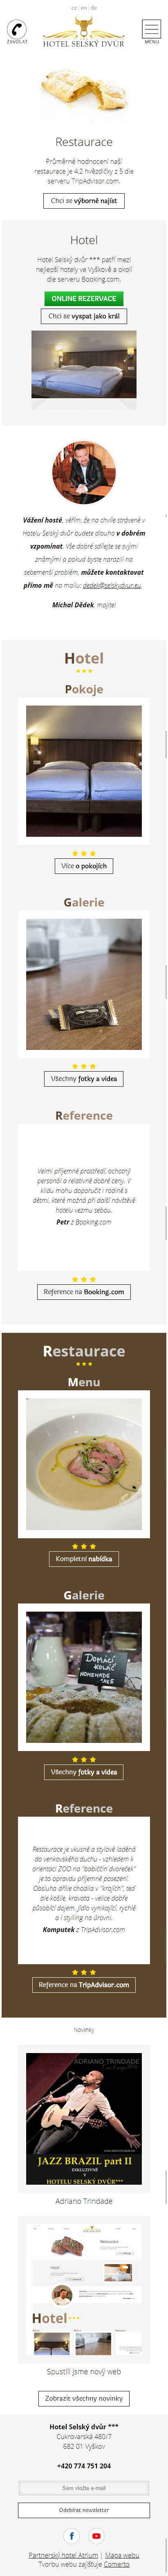 Hotel a restaurace Selský dvůr Vyškov – tvorba webu - Screenshot mobilní verze